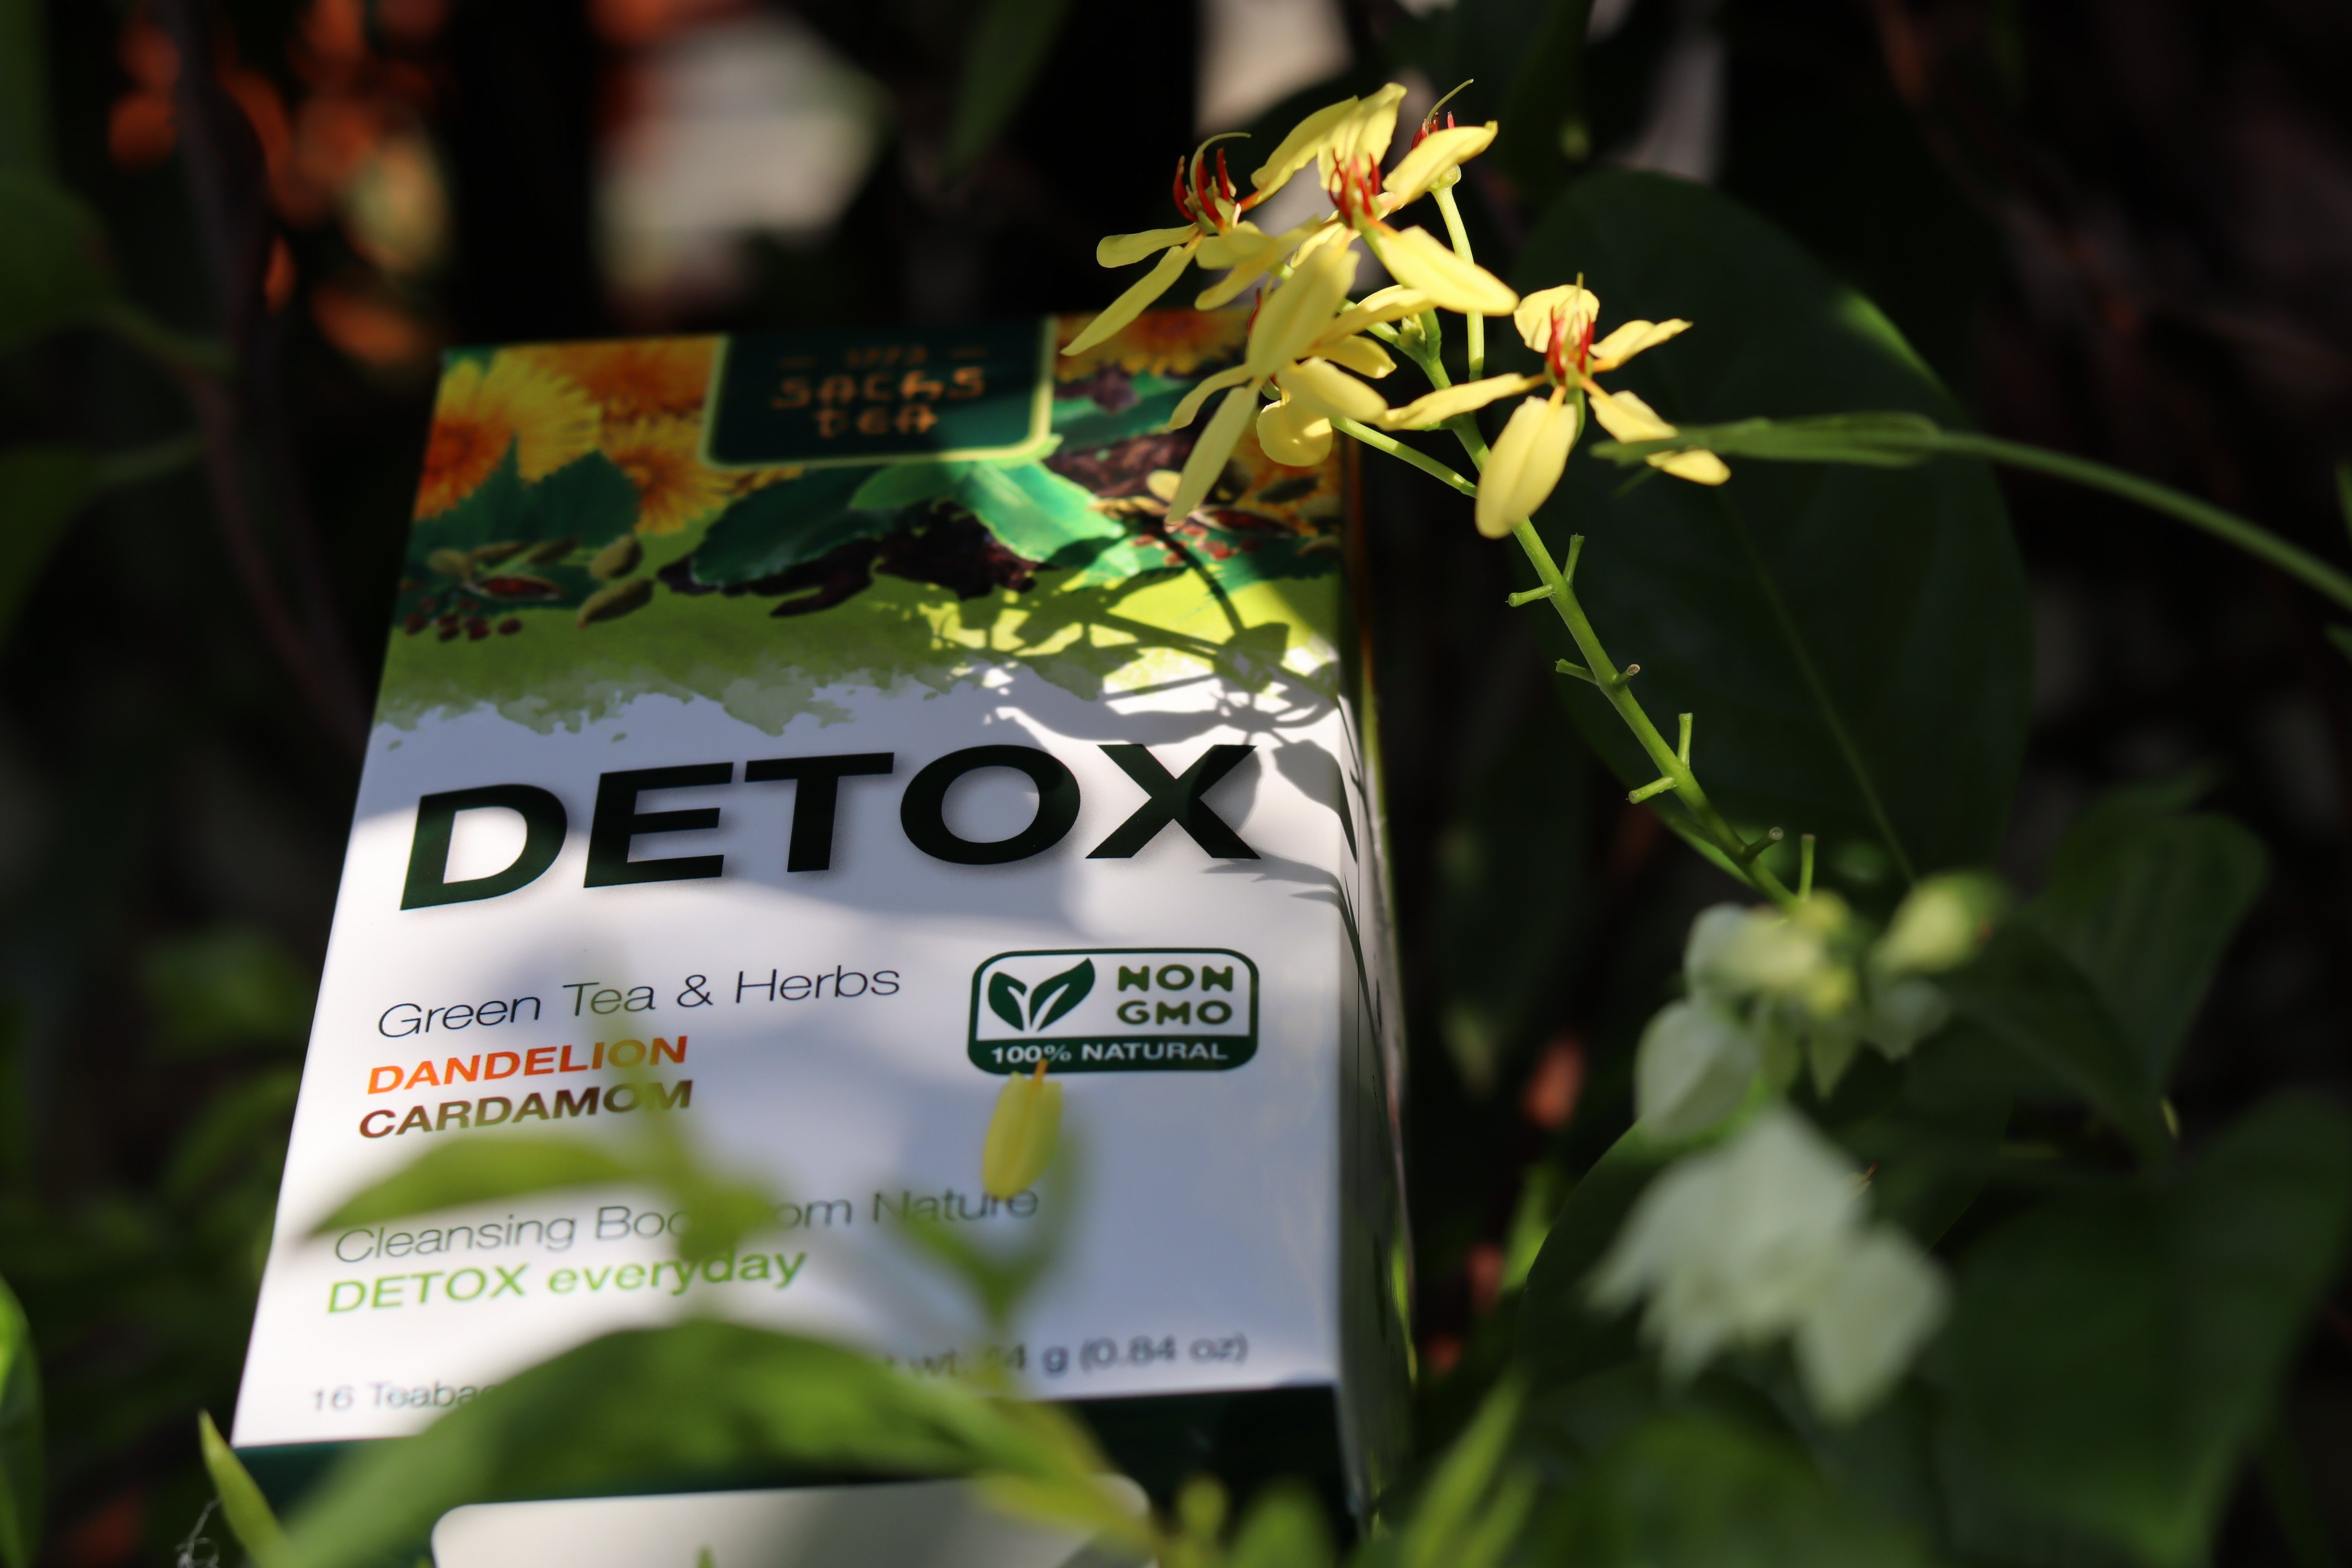 Trà thanh lọc Detox D2021 SACHS TEA 1773 thanh nhiệt, thải độc, mát gan, giúp đẹp da, lợi tiểu thành phần thảo dược tự nhiên 16 túi lọc/hộp